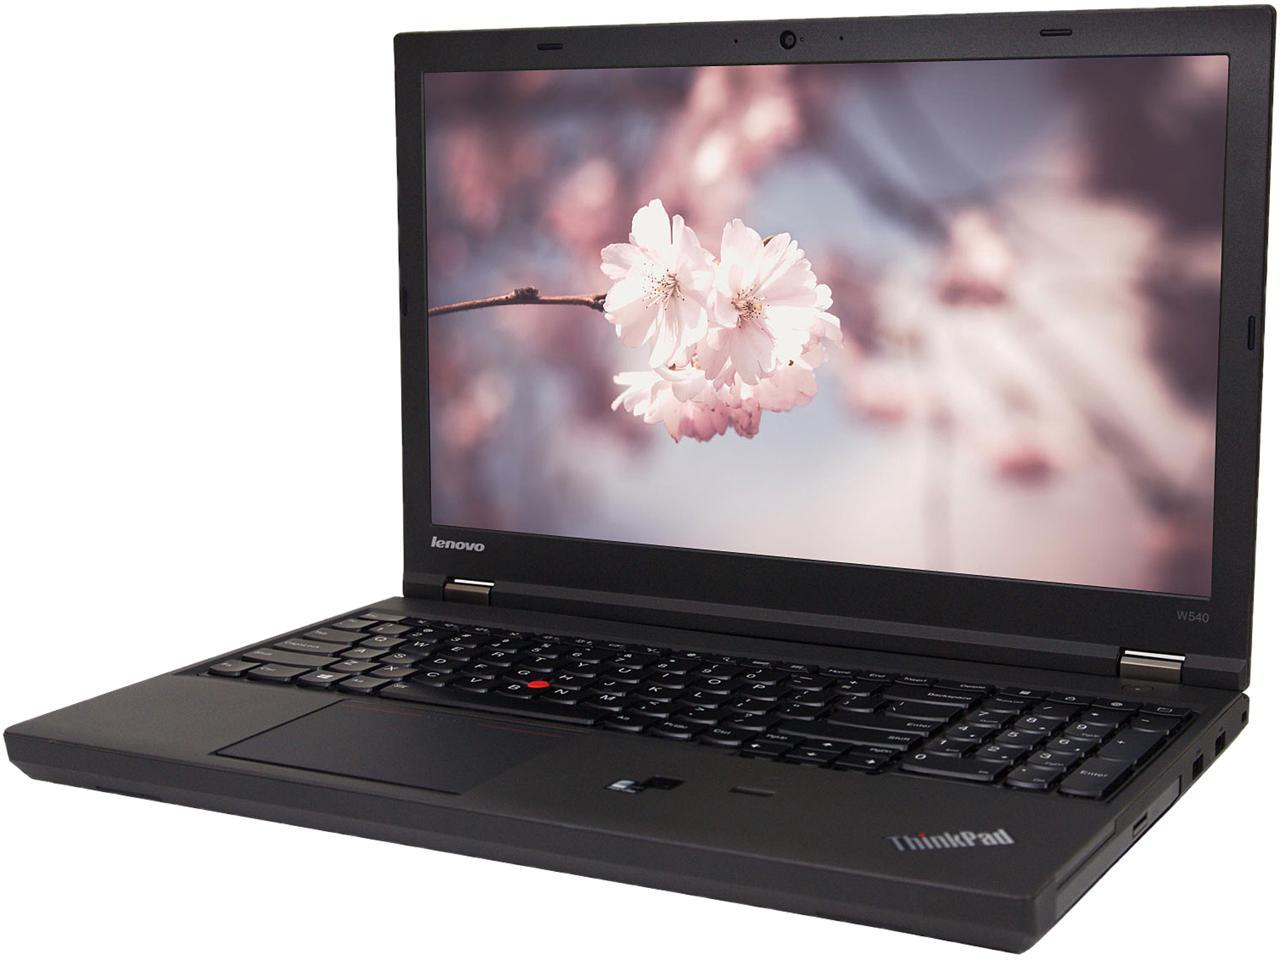 Lenovo W540 Mobile Workstation Laptop – Refurbished – We Got Tech